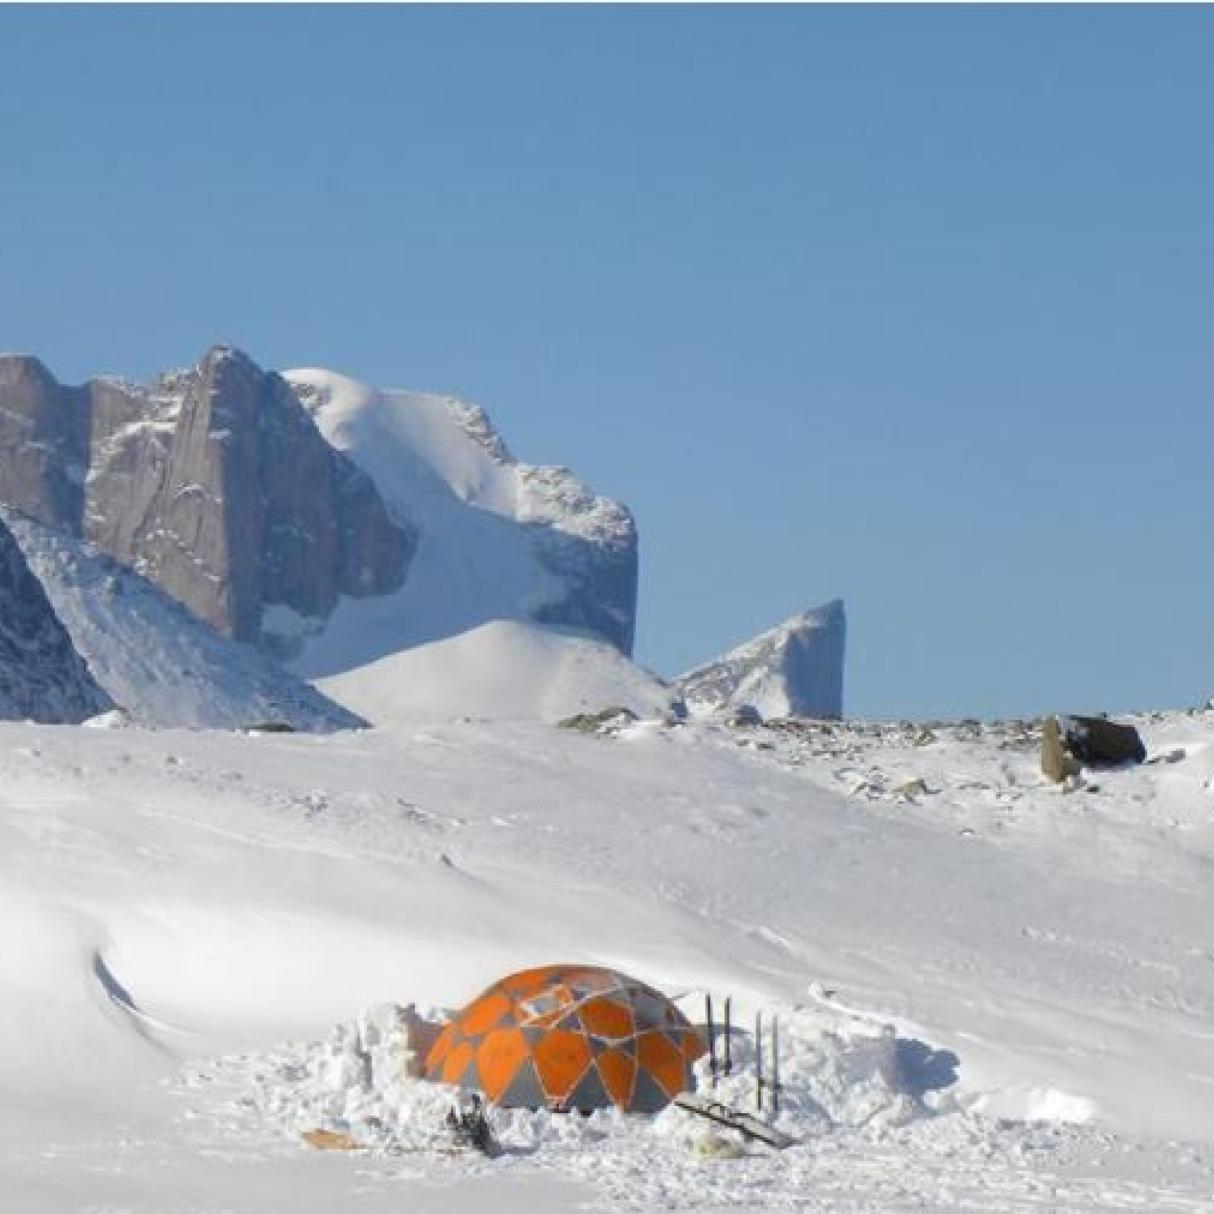 Winter camping site in Nunavut